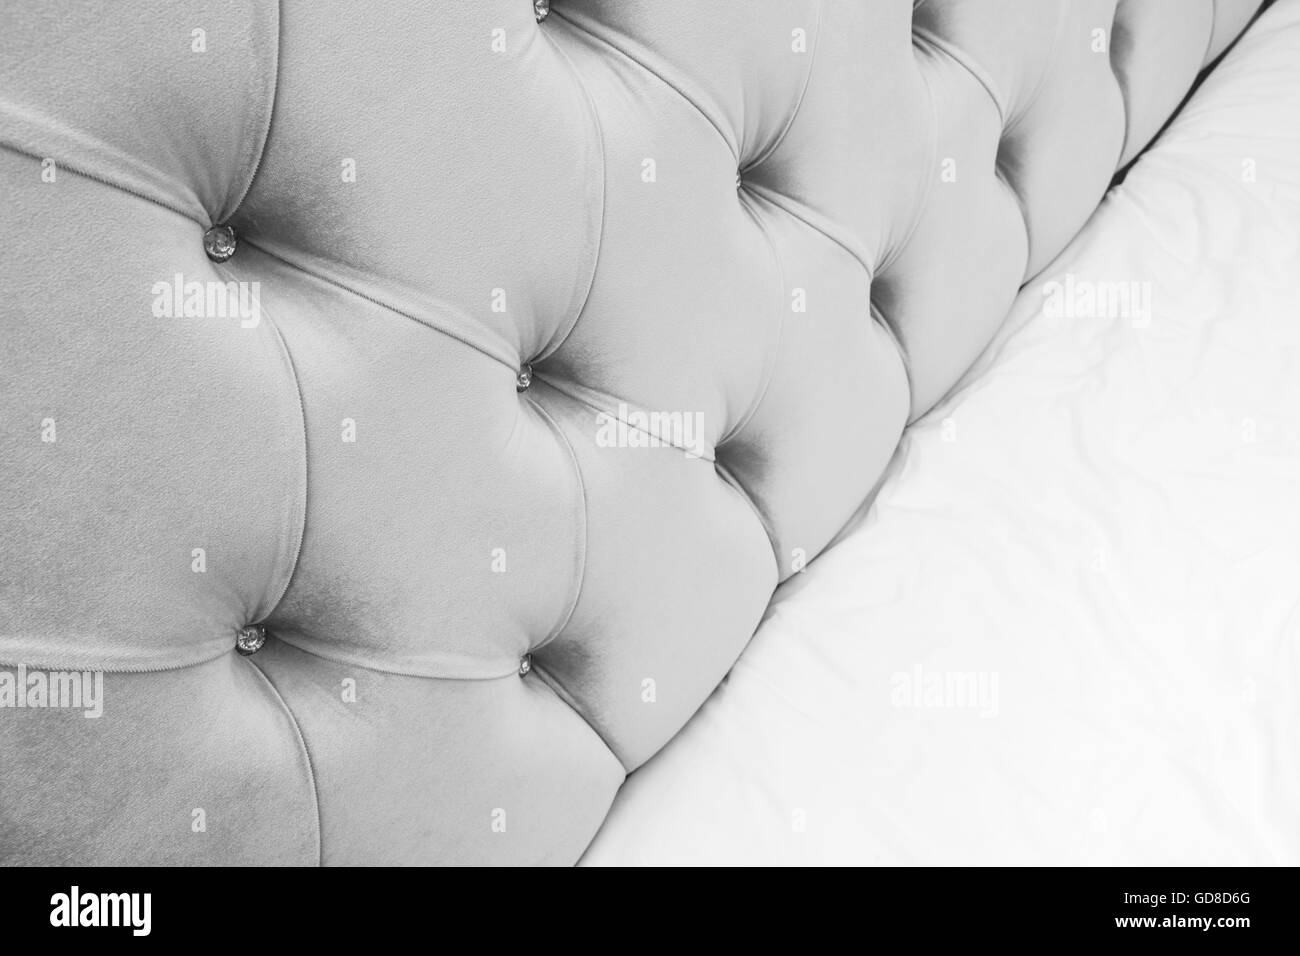 Luxus Schlafzimmer Inneren Fragment, weiche graue Kopfbrett und weiße Bettwäsche-Bettwäsche auf breites Doppelbett entleeren Stockfoto